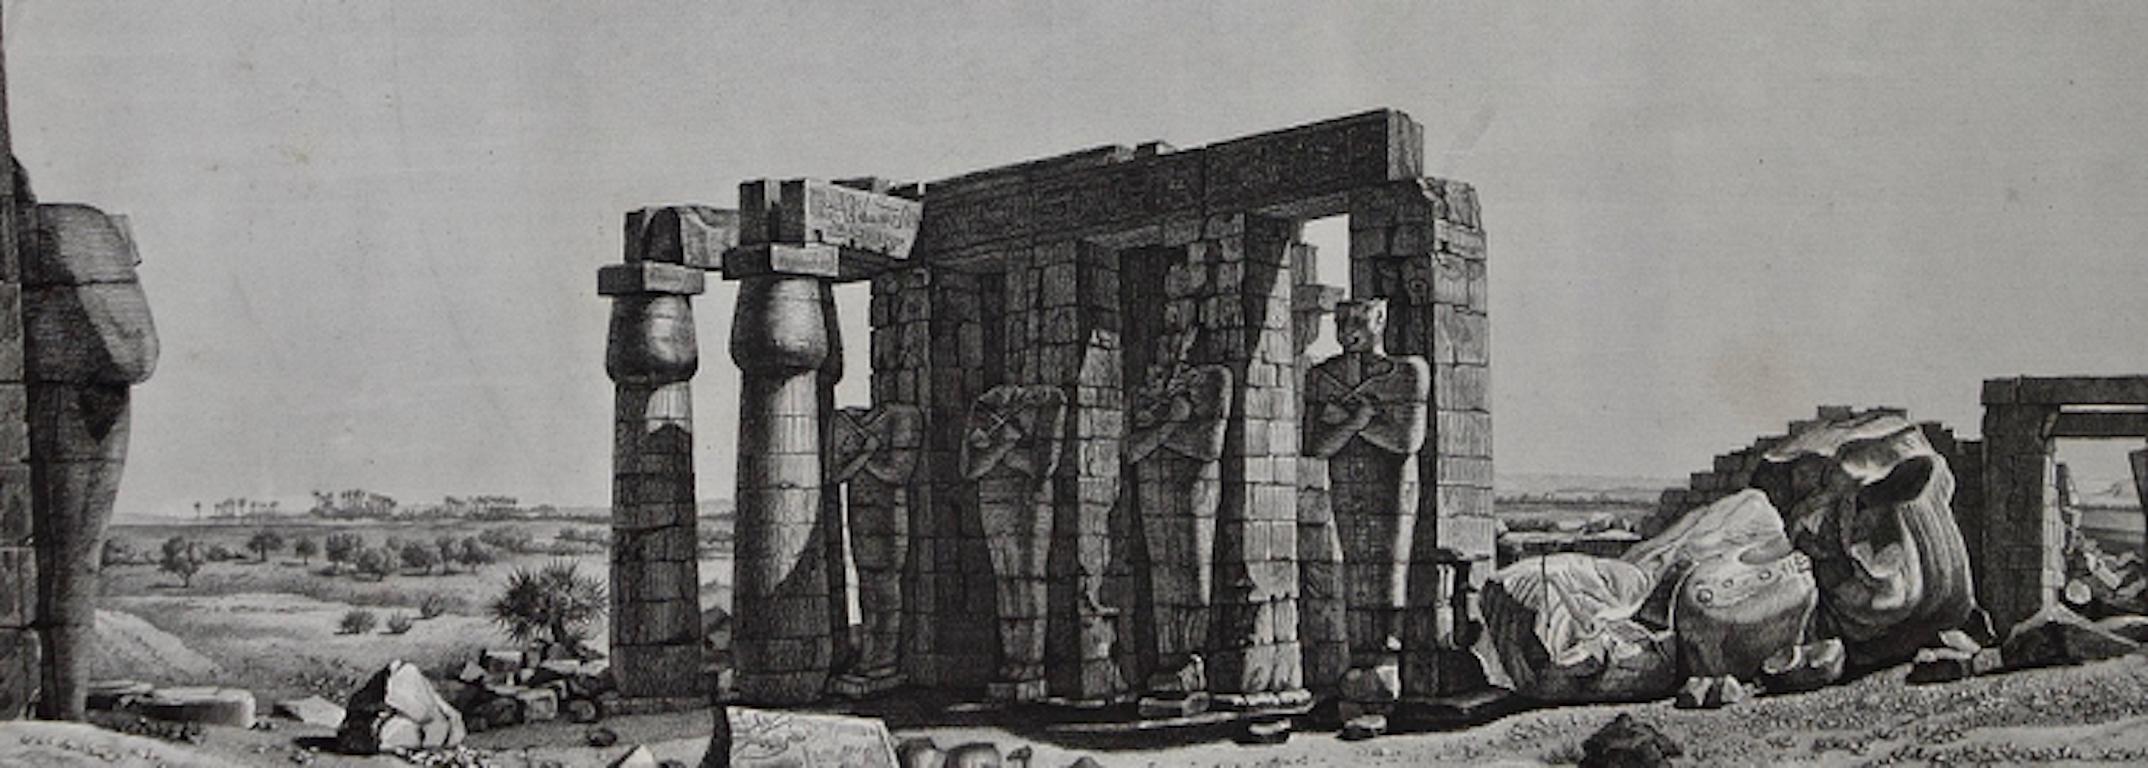 'Description De L'Égypte' Engraving of Tomb & Statue of Ramses II (Ozymandias)  - Gray Landscape Print by André Dutertre 